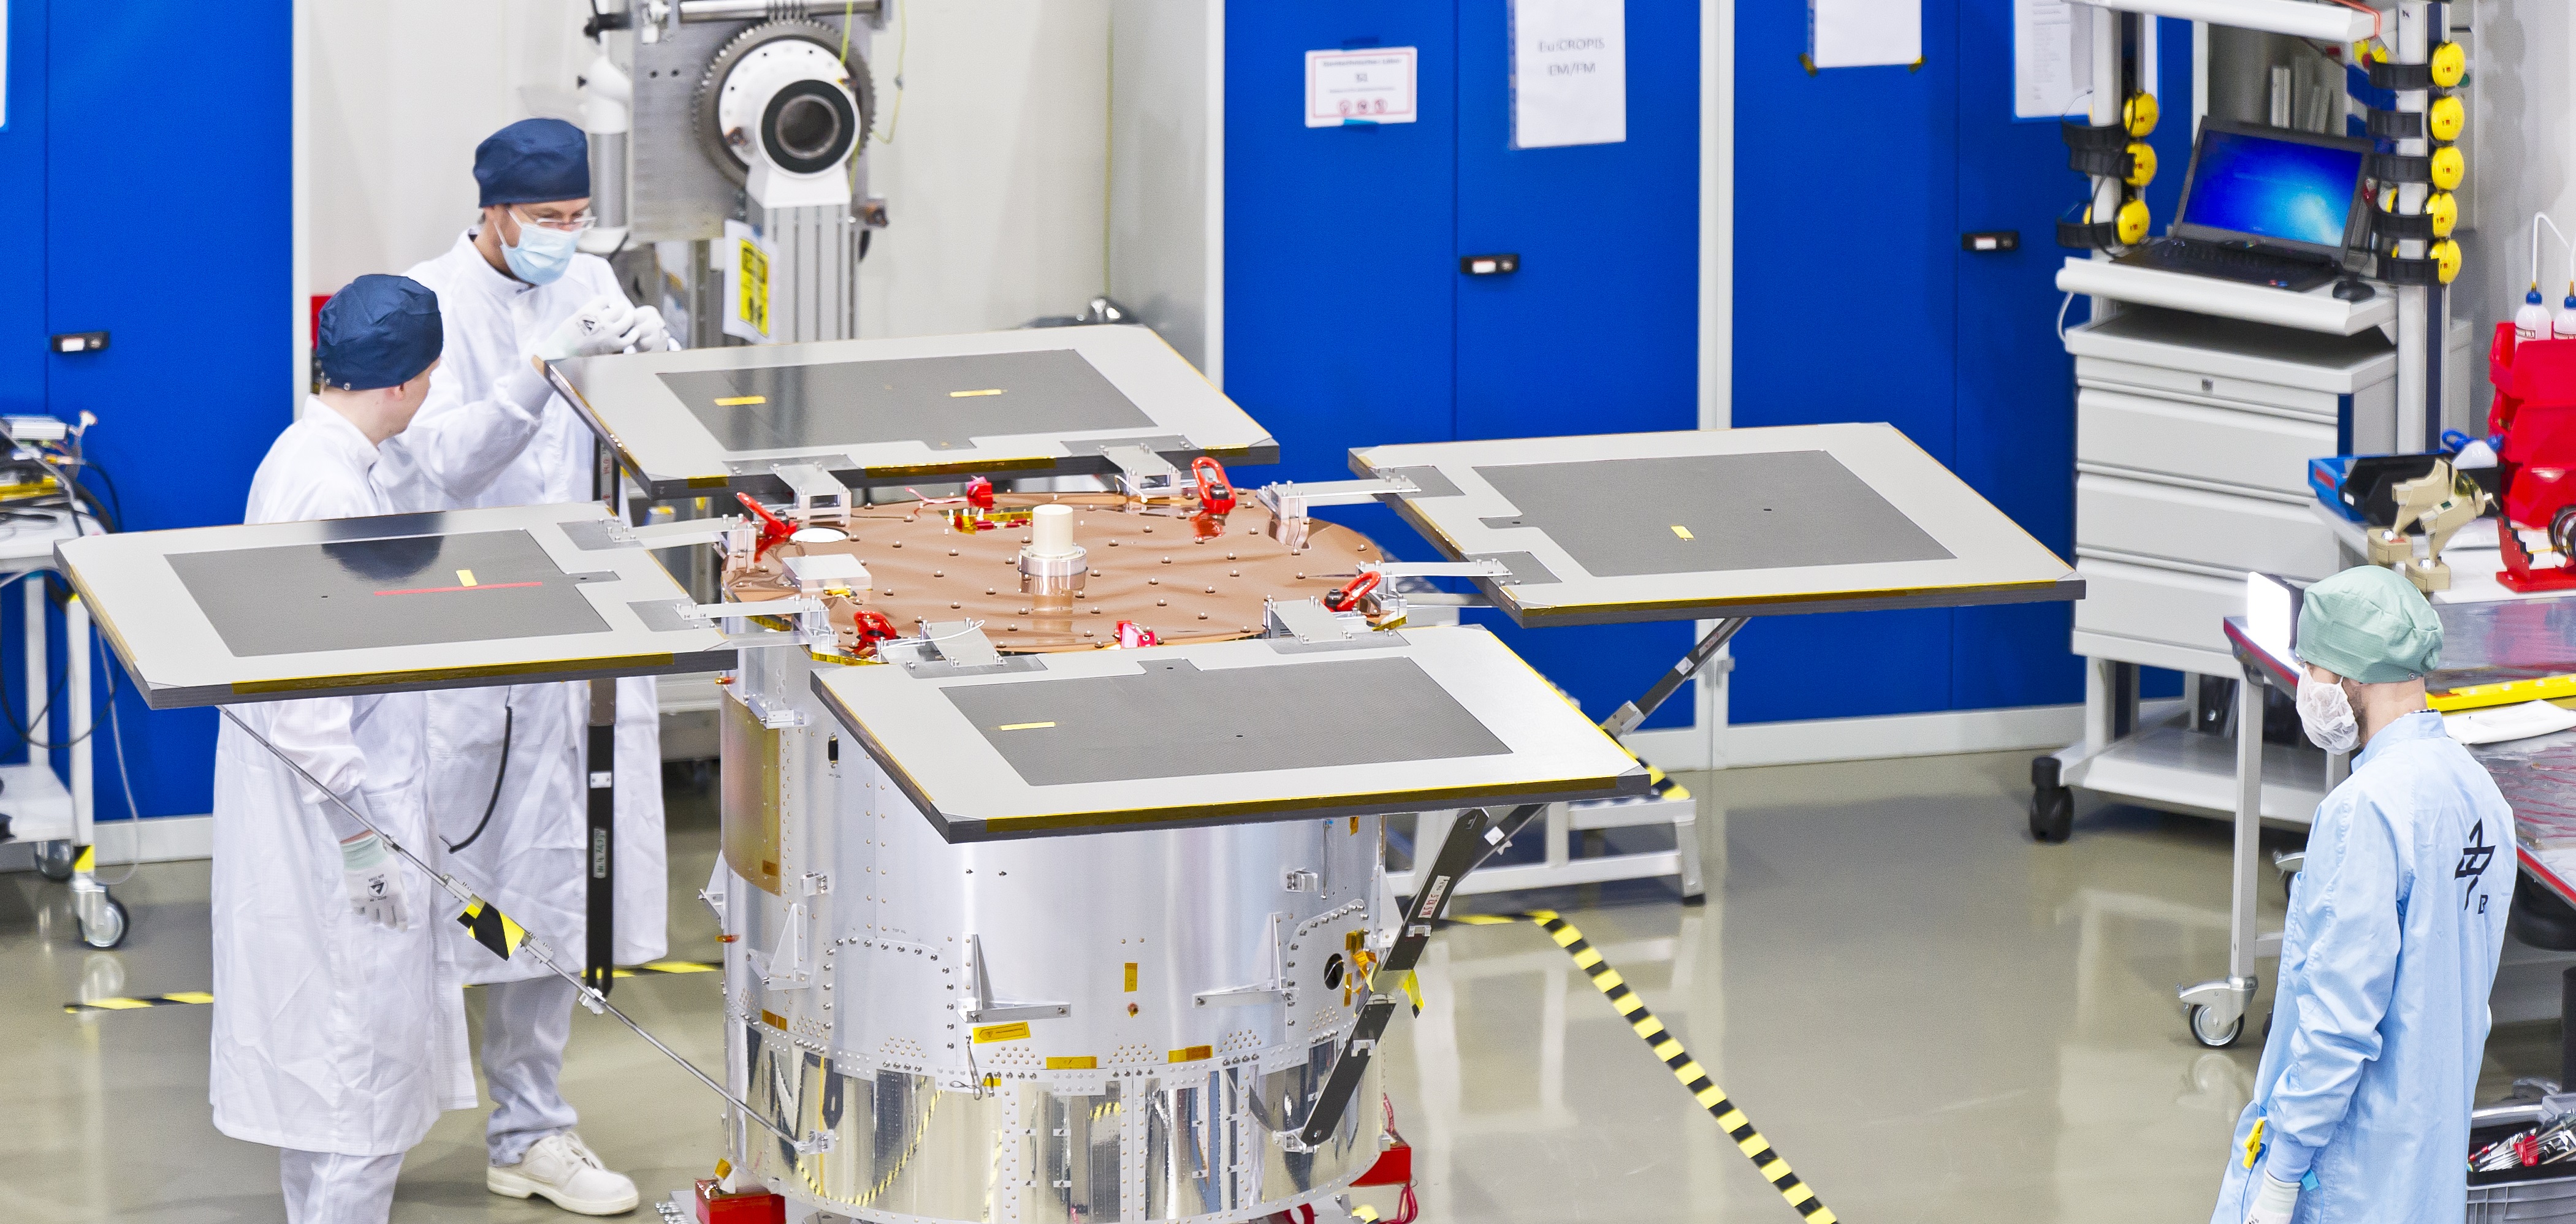 Der Satellit Eu:CROPIS wird auf seinen Einsatz vorbereitet © DLR